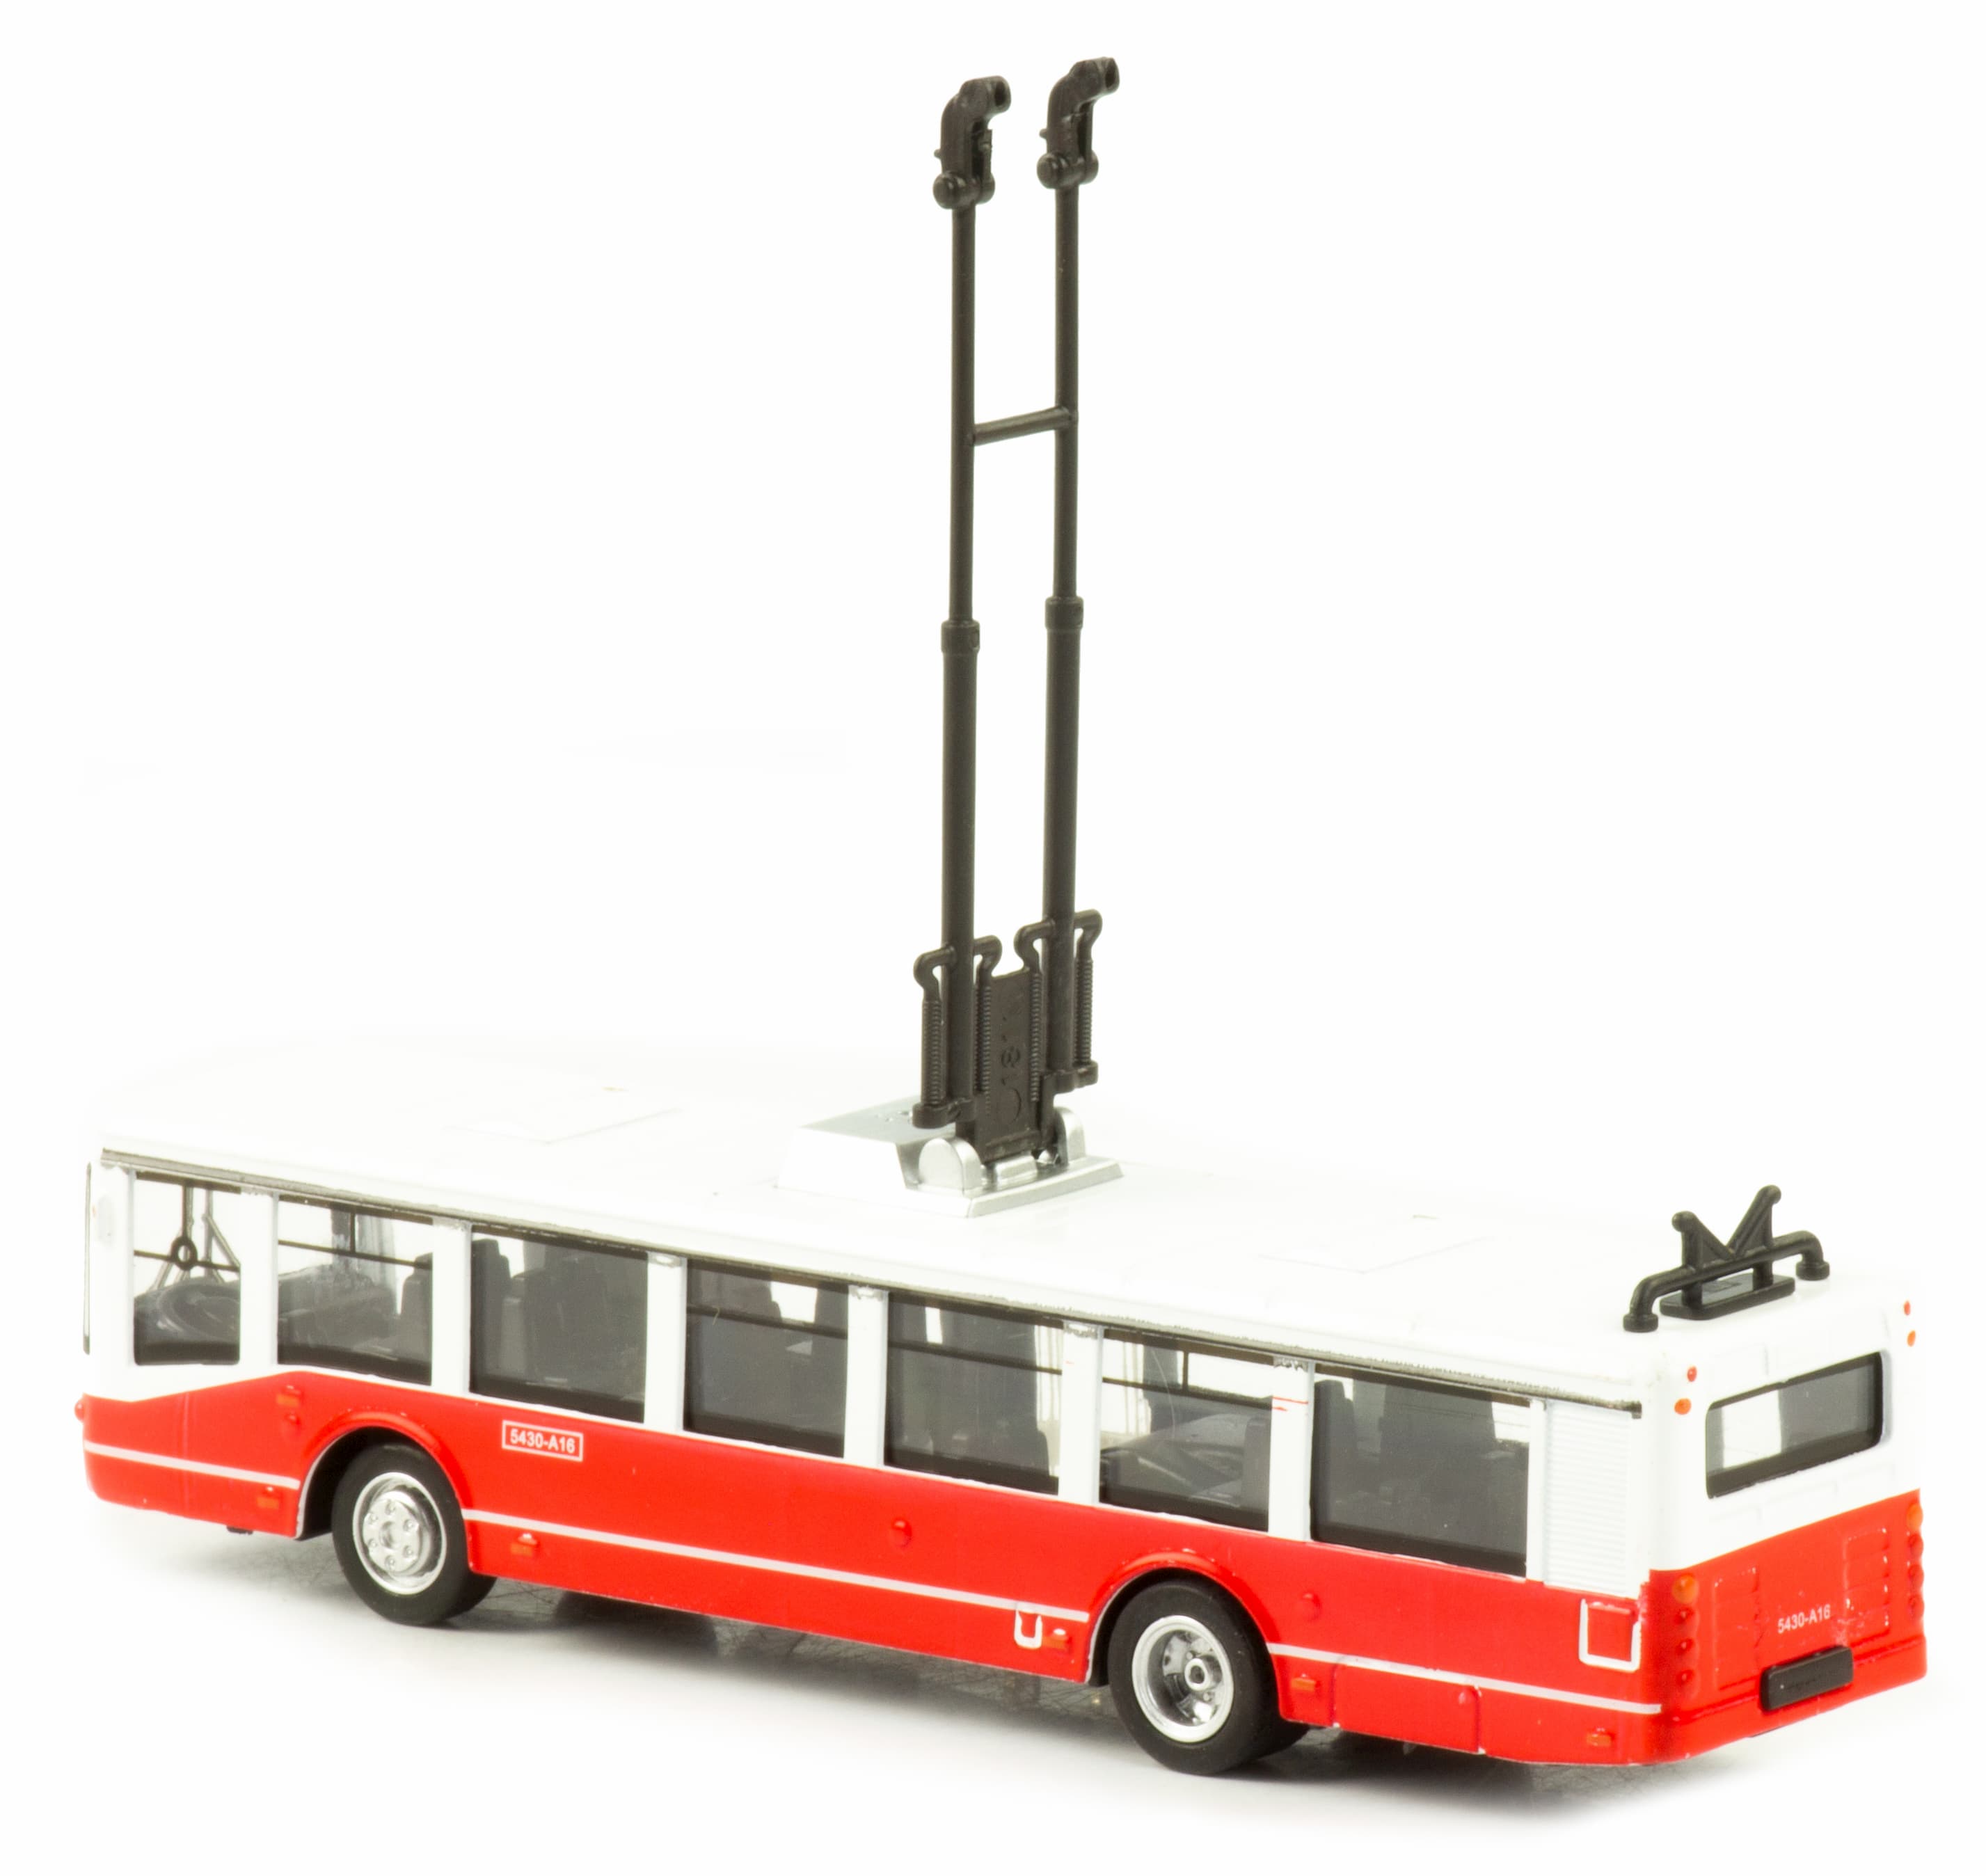 Металлический троллейбус 1:32 «ЛиАЗ 5430-А16» 17 см. 1811-12D инерционный, свет, звук / Красный